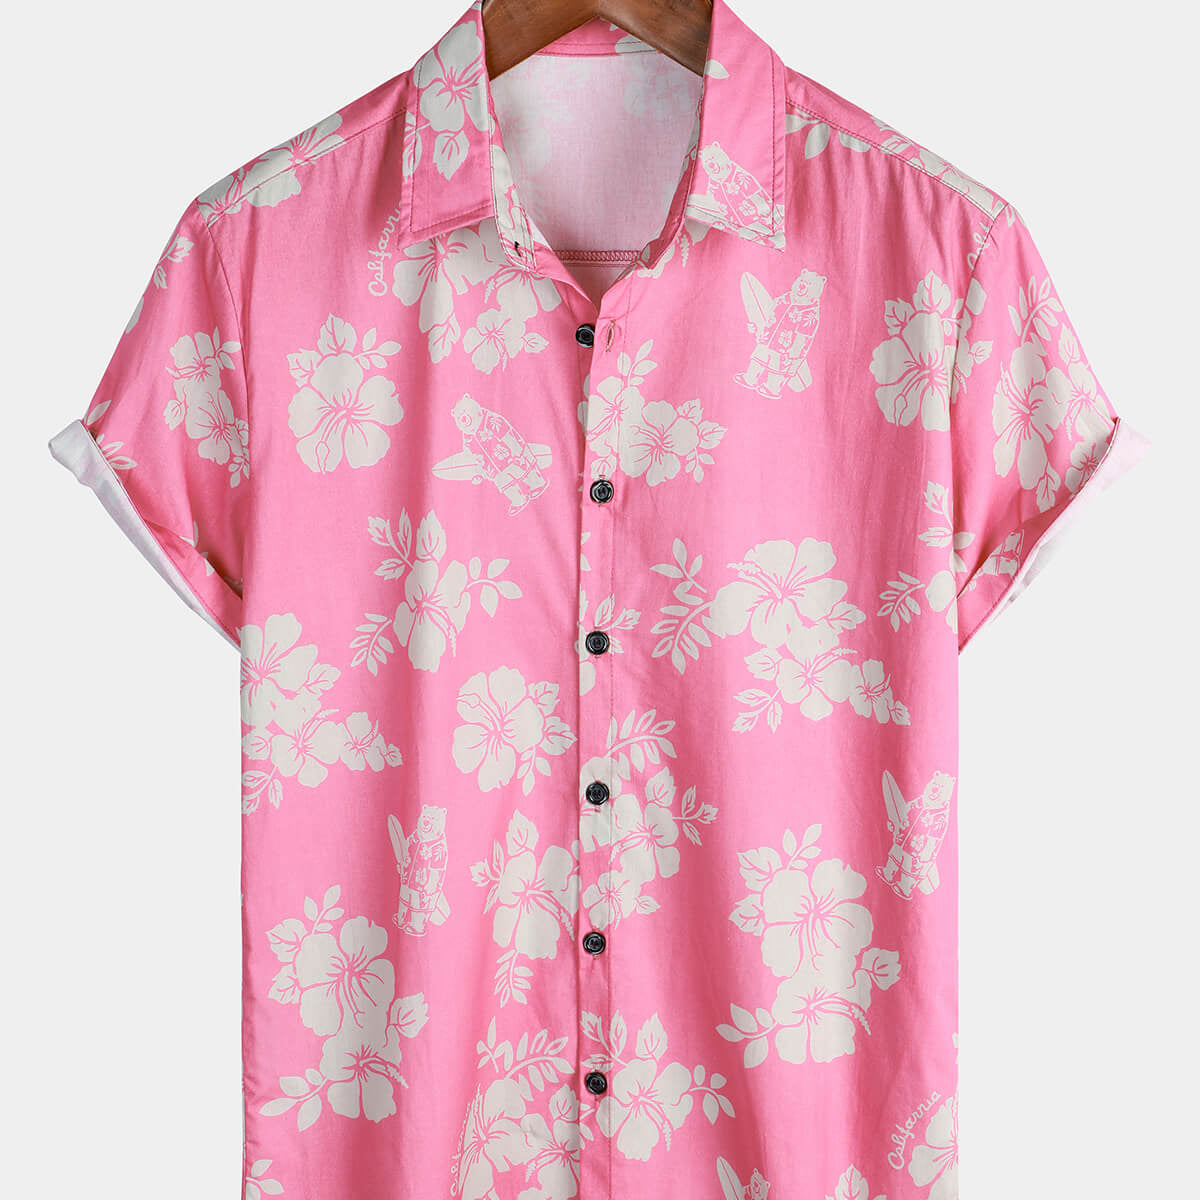 Chemise hawaïenne à manches courtes rose fleurie pour hommes